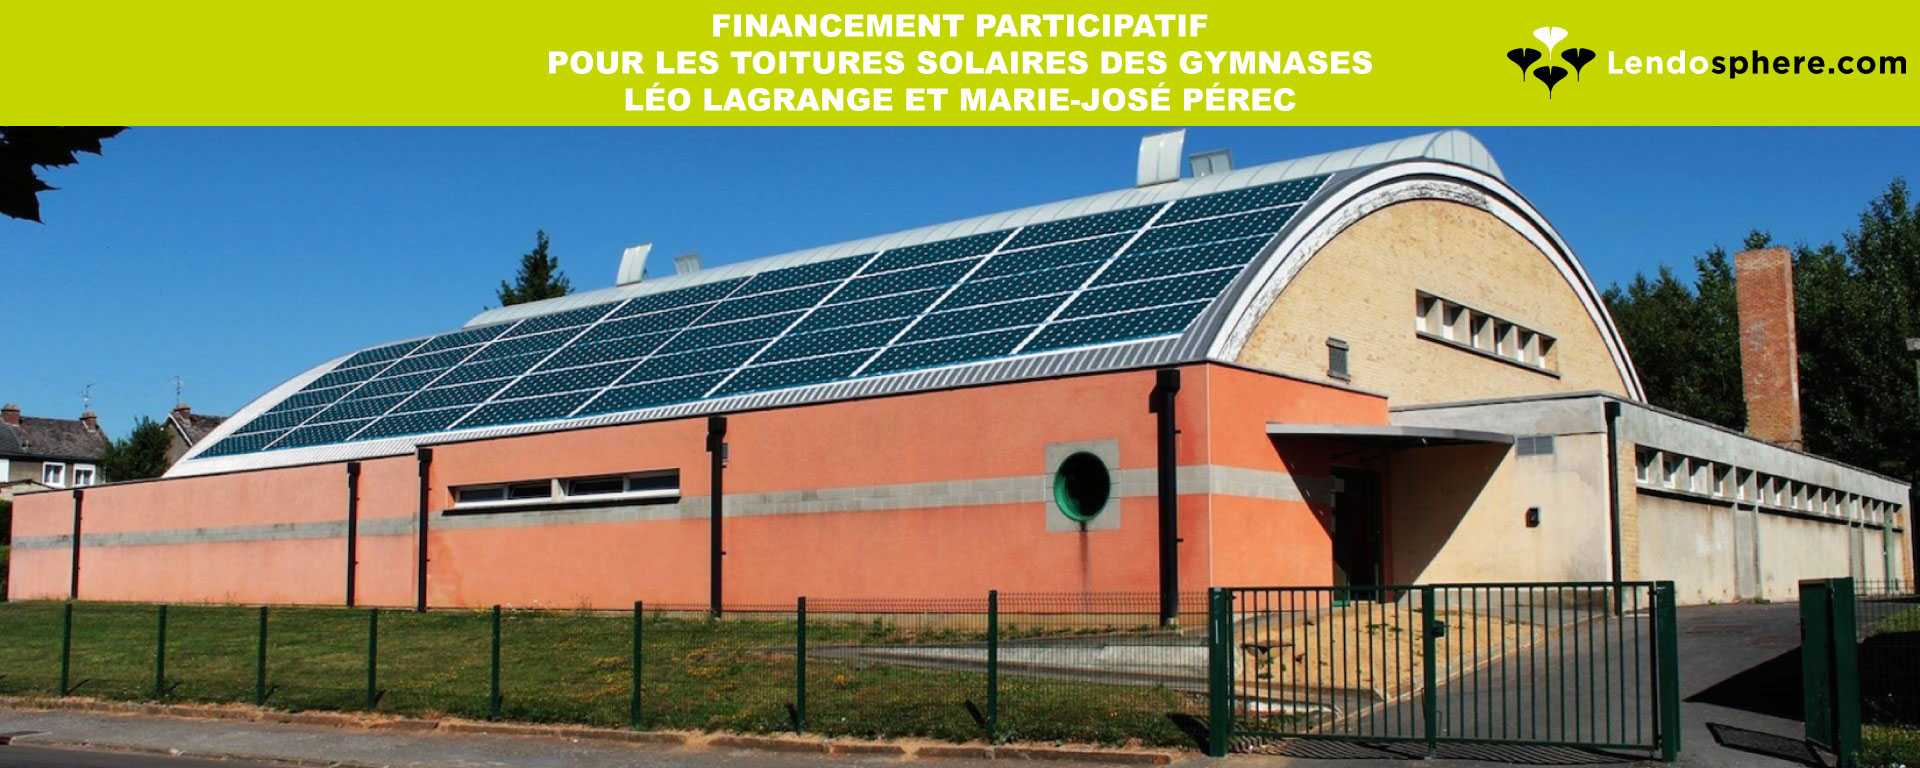 Financement participatif pour les toitures solaires des gymnases Marie-José Pérec et Léo Lagrange. Ouverture de la collecte le 16 juin 2020